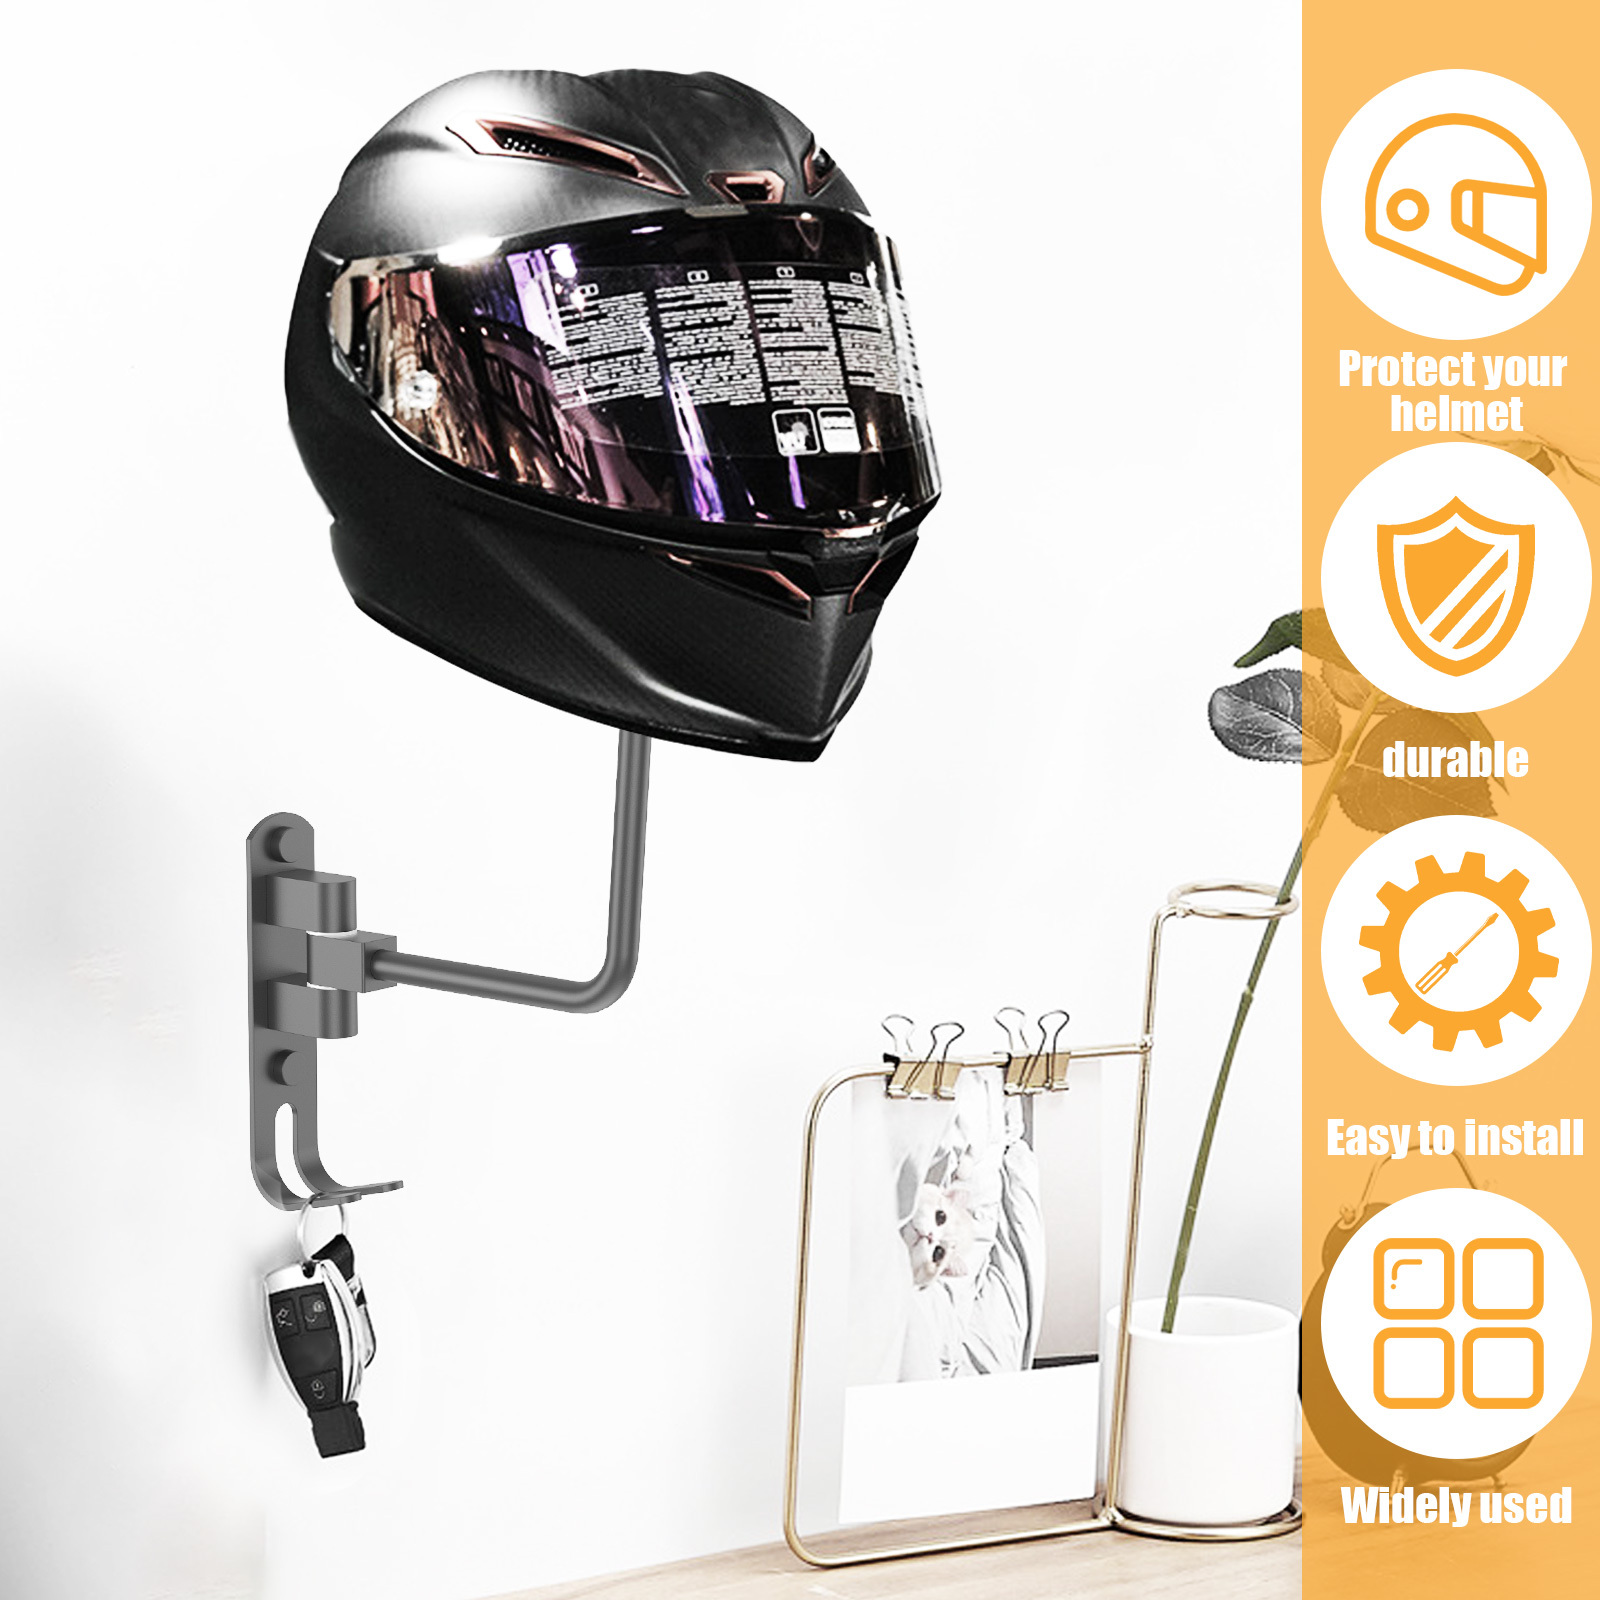  BE-STRONG Soporte para casco de motocicleta de 180°, soporte de  metal giratorio para casco con 2 ganchos para casco, adecuado para abrigos,  sombreros, cascos de béisbol y fútbol, 1 unidad : Automotriz